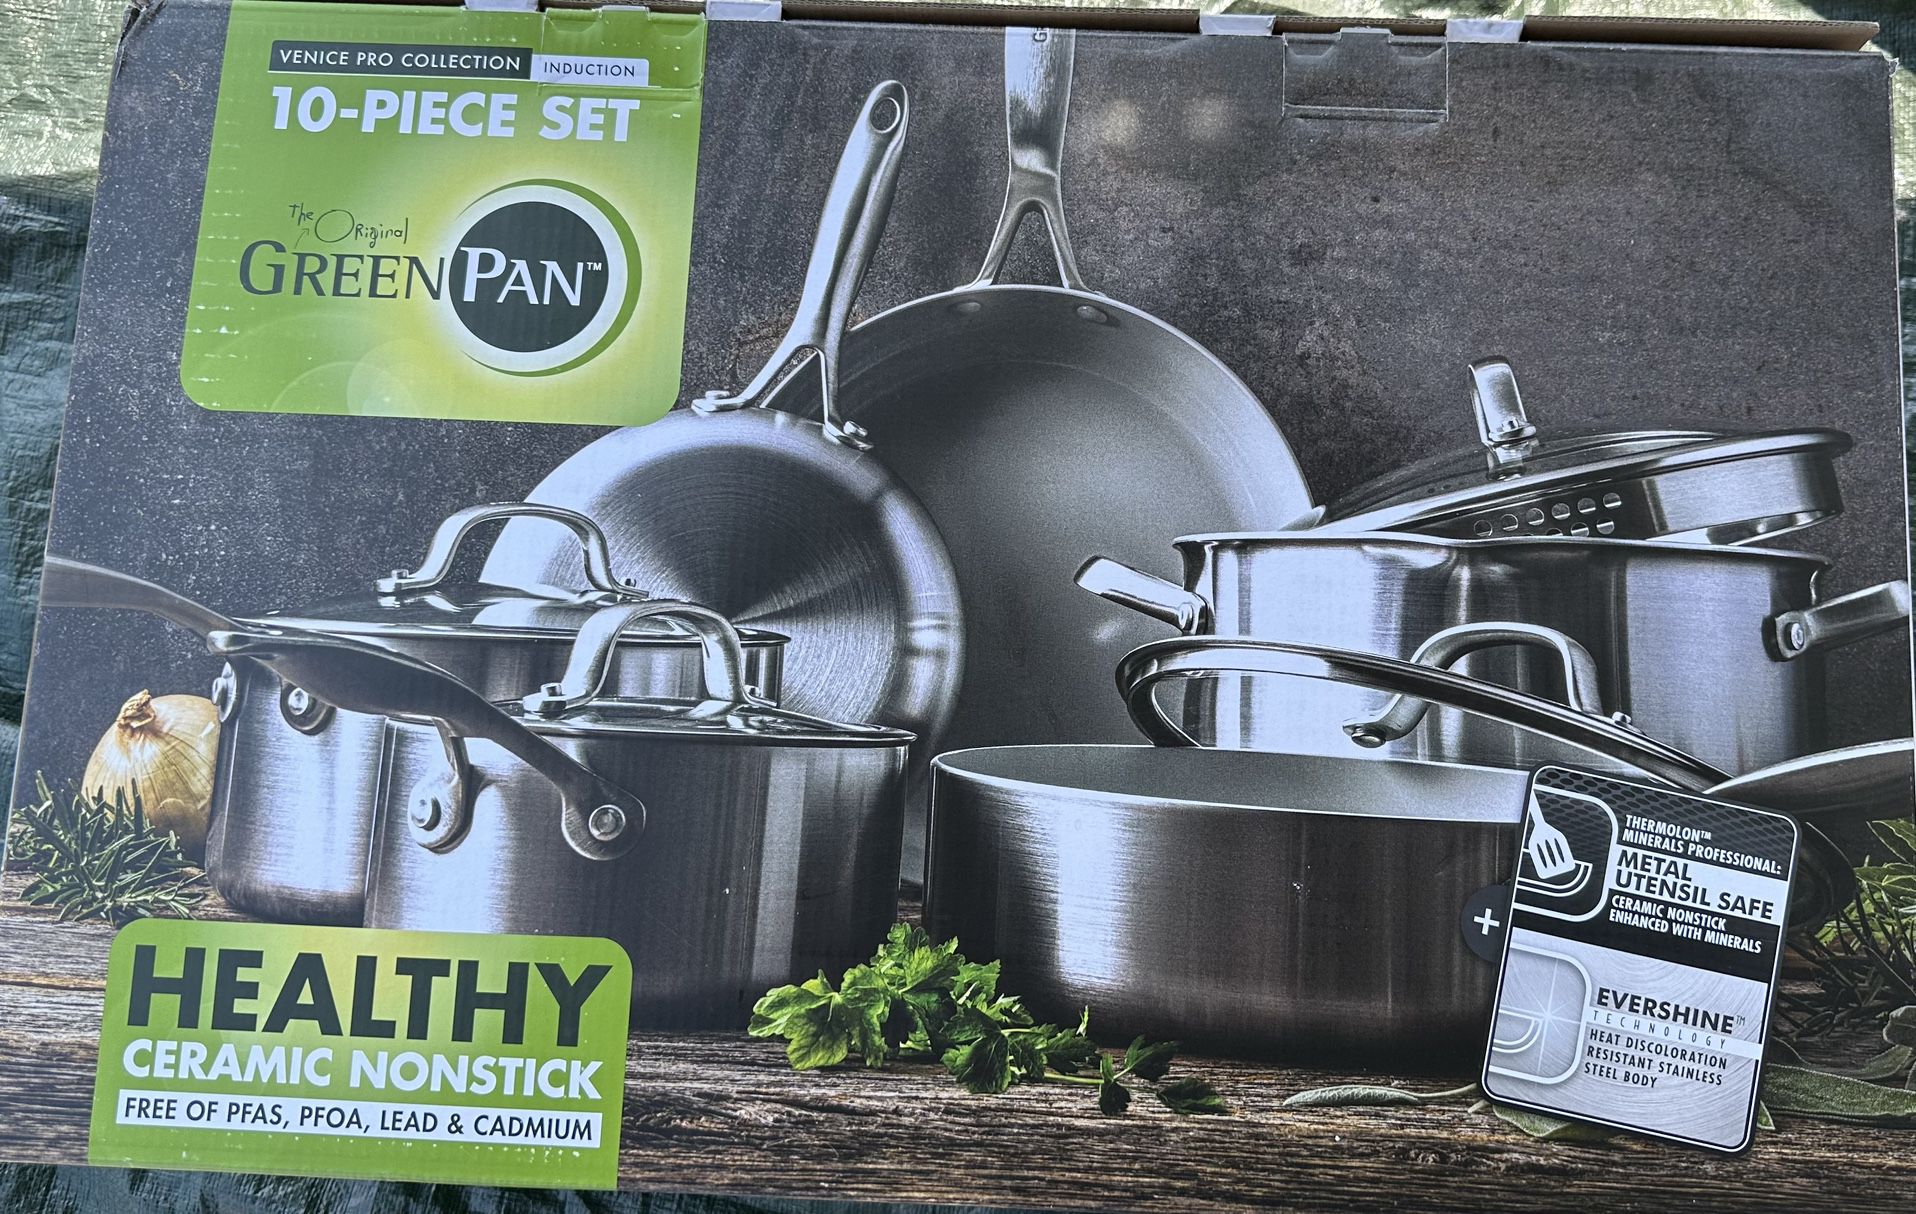 The Original Green Pan 10 Piece Set